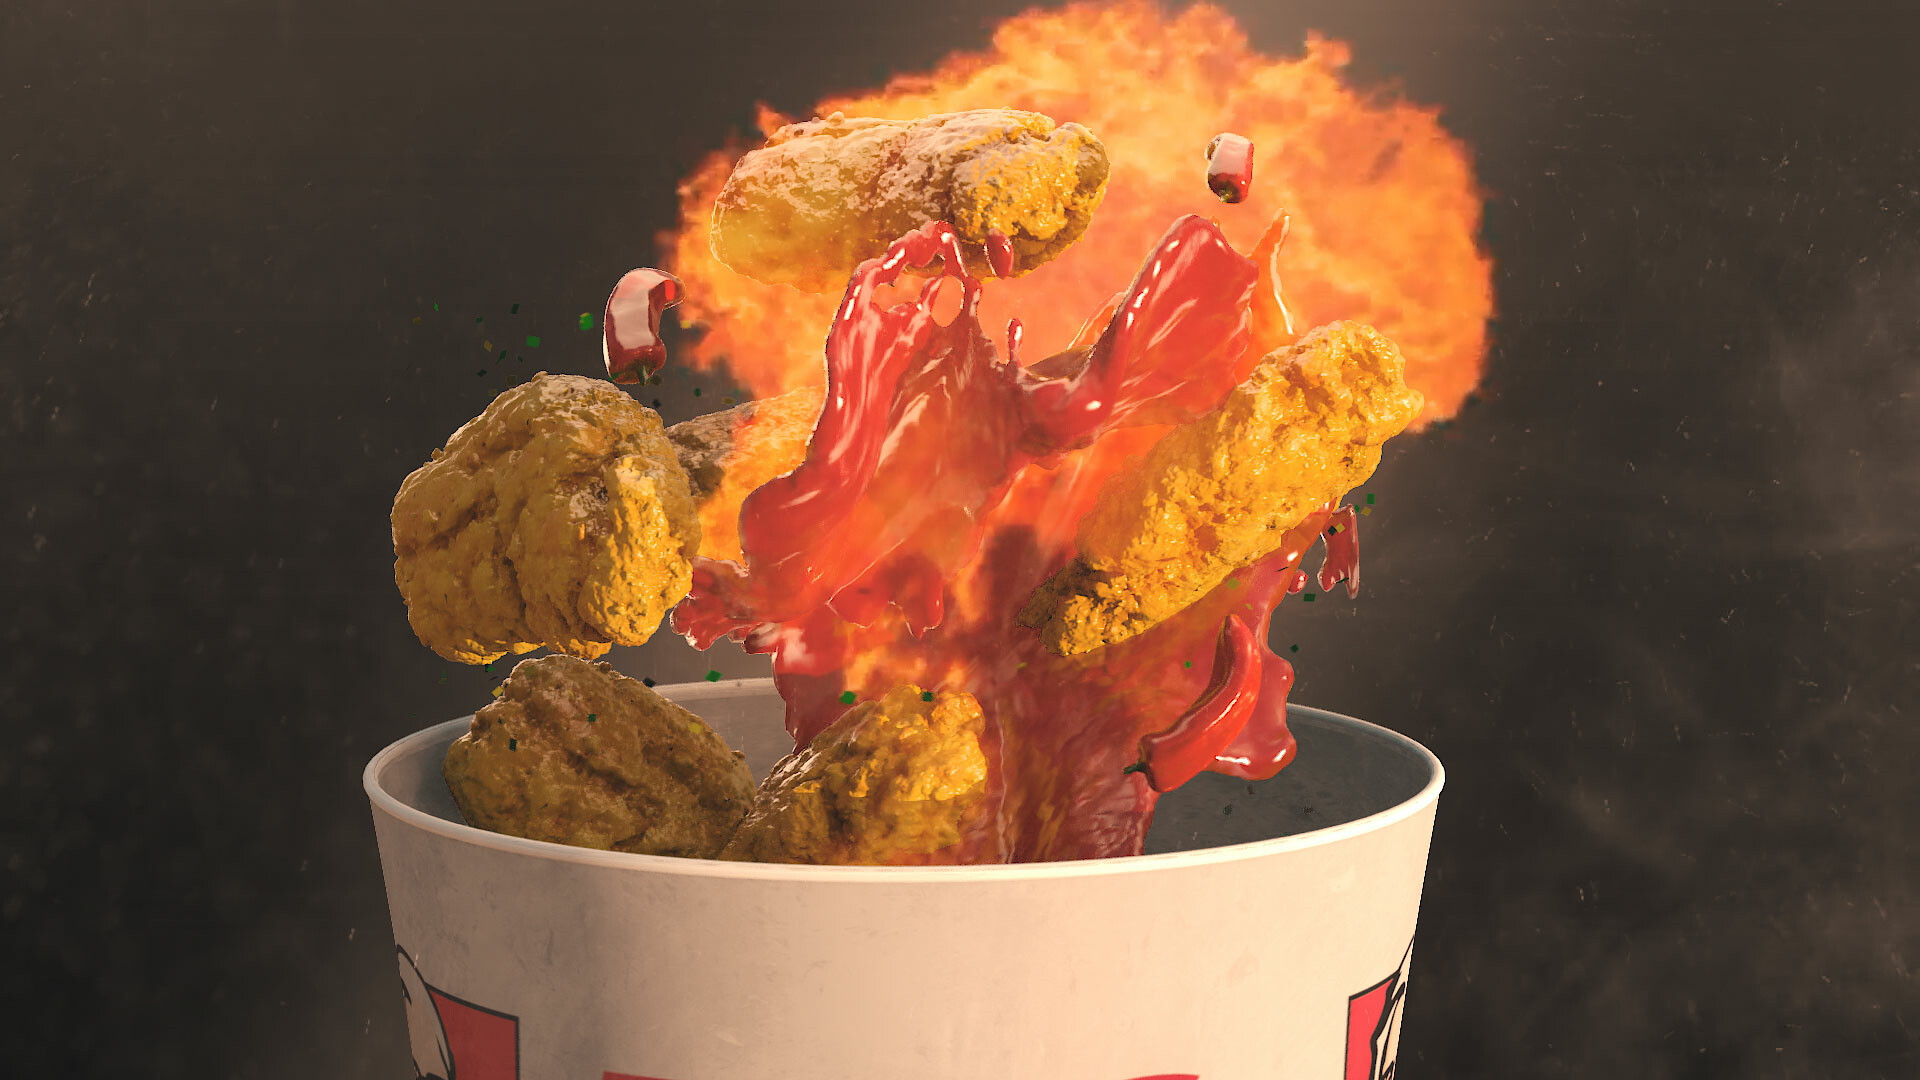 KFC FIRECRACKER VFX BREAKDOWN